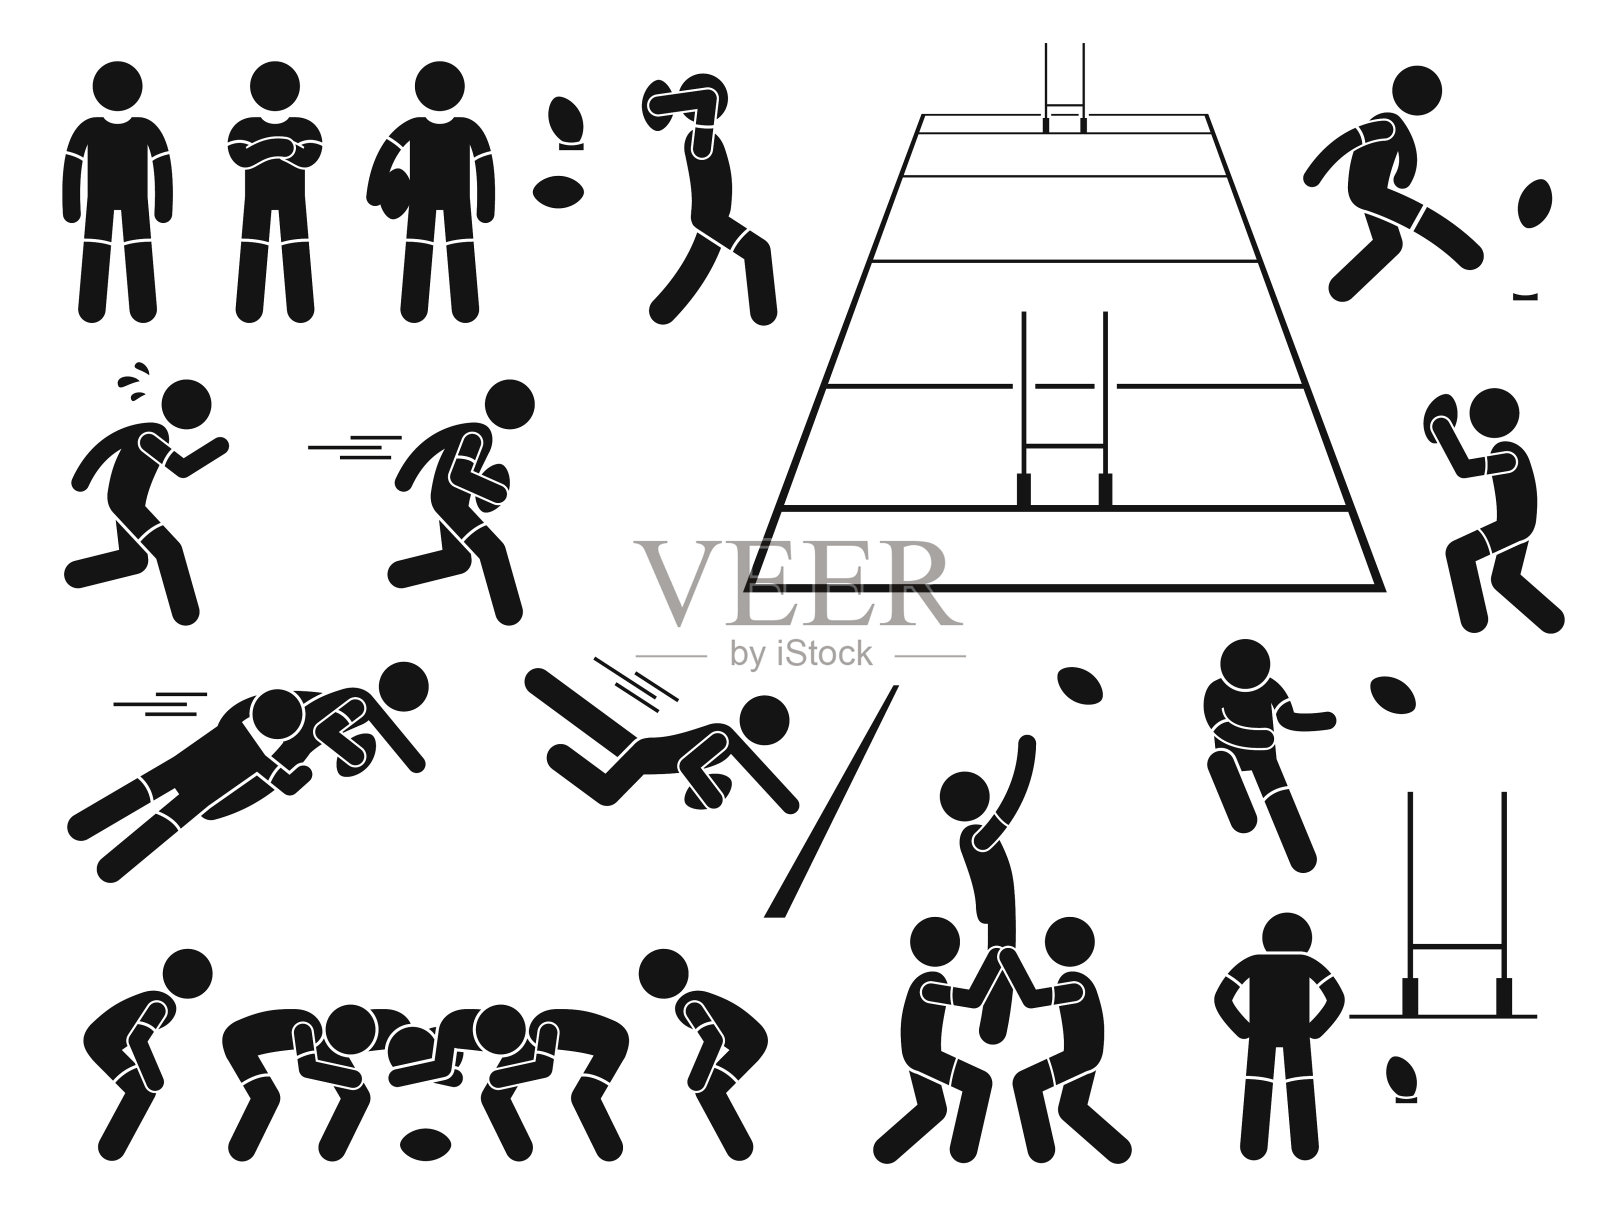 橄榄球运动员动作姿势棍棒图象形图标插画图片素材